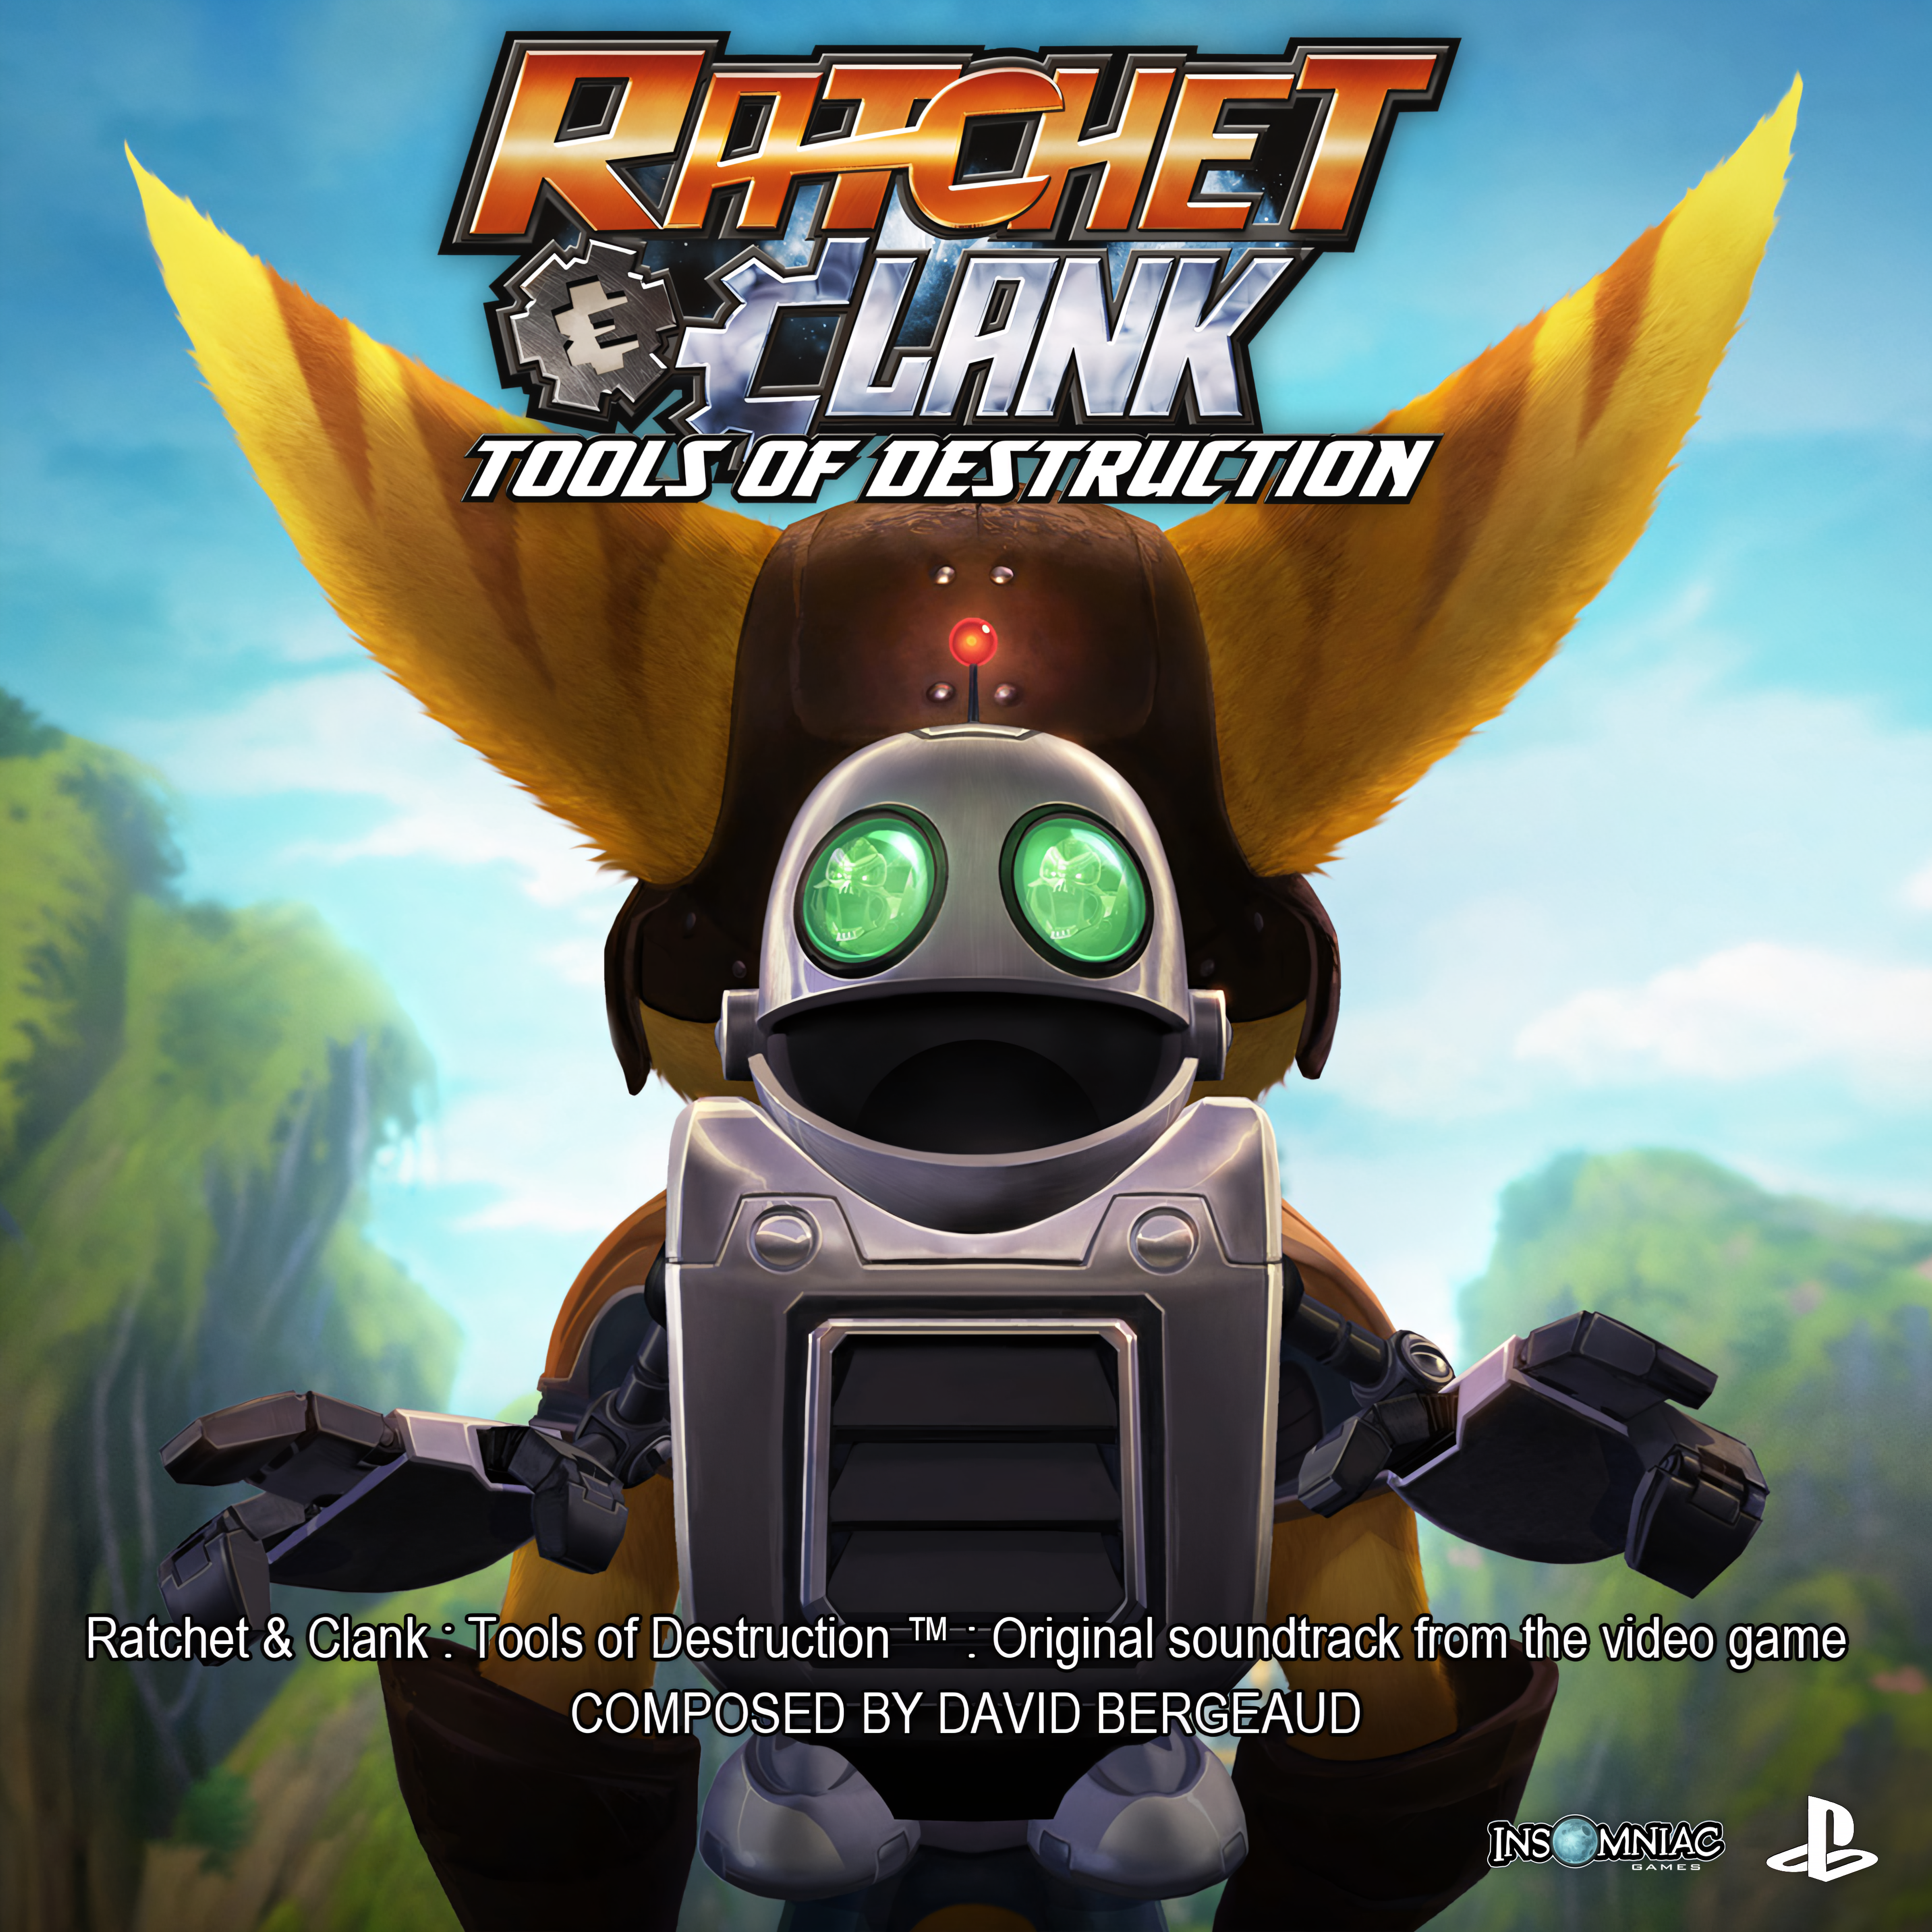 Formuleren Sluimeren Samenwerken met Ratchet & Clank Future: Tools of Destruction (PS3) (gamerip) (2007) MP3 - Download  Ratchet & Clank Future: Tools of Destruction (PS3) (gamerip) (2007)  Soundtracks for FREE!